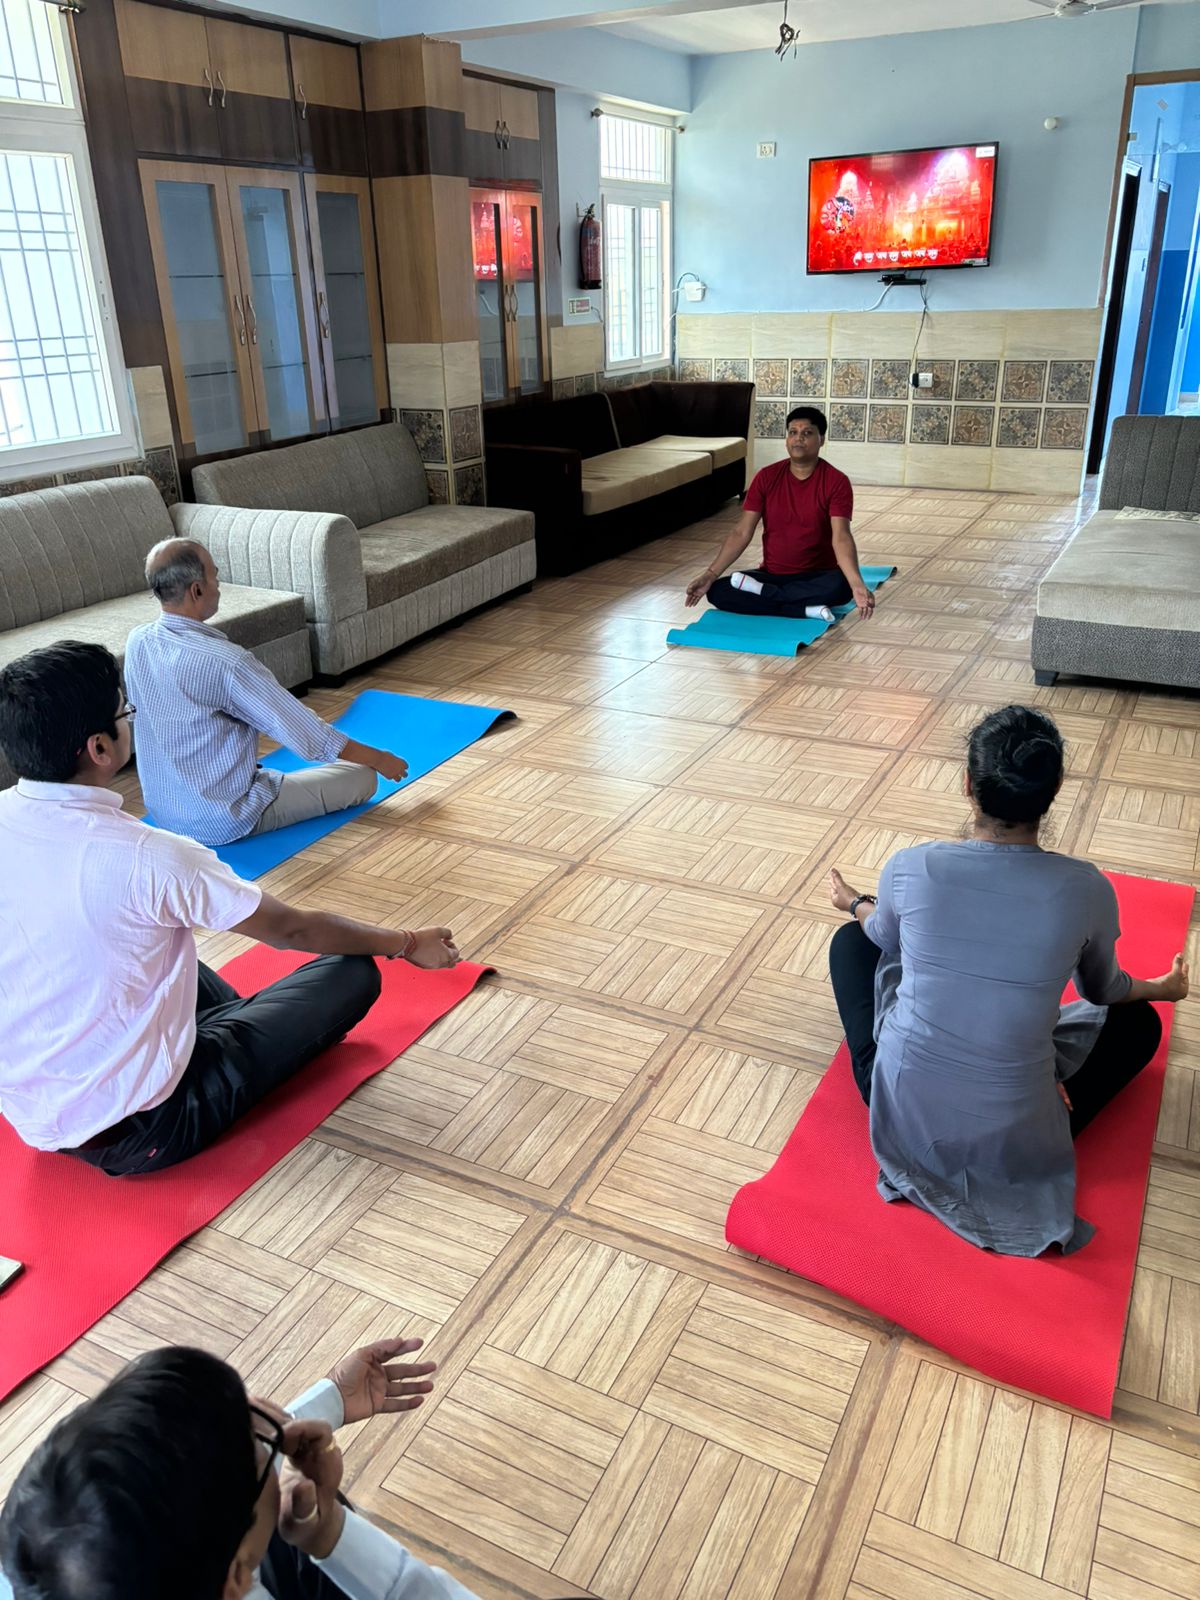 Yoga Sessions Commence at Mahavir Senior Citizen Hospital: Enhancing Wellness for Patna's Elderly

